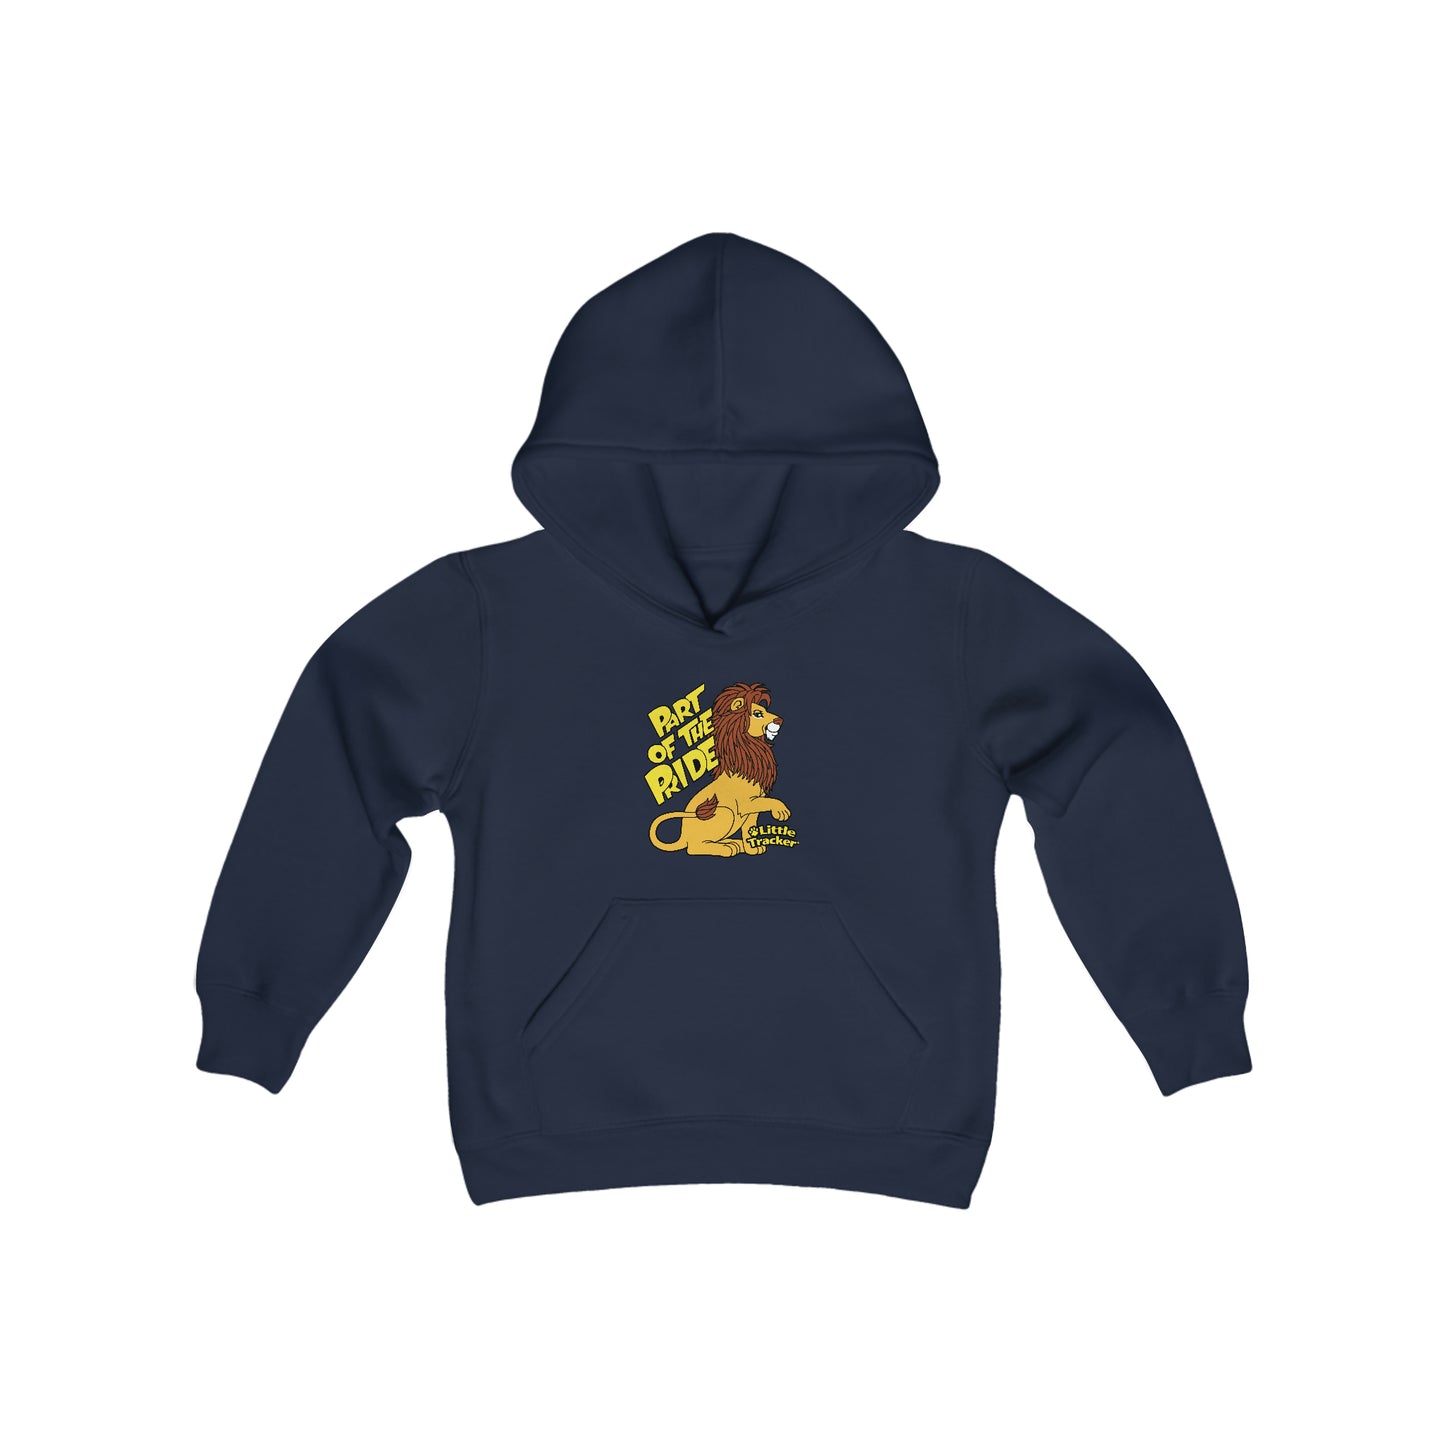 Little Tracker® Lion Youth Heavy Blend Hooded Sweatshirt